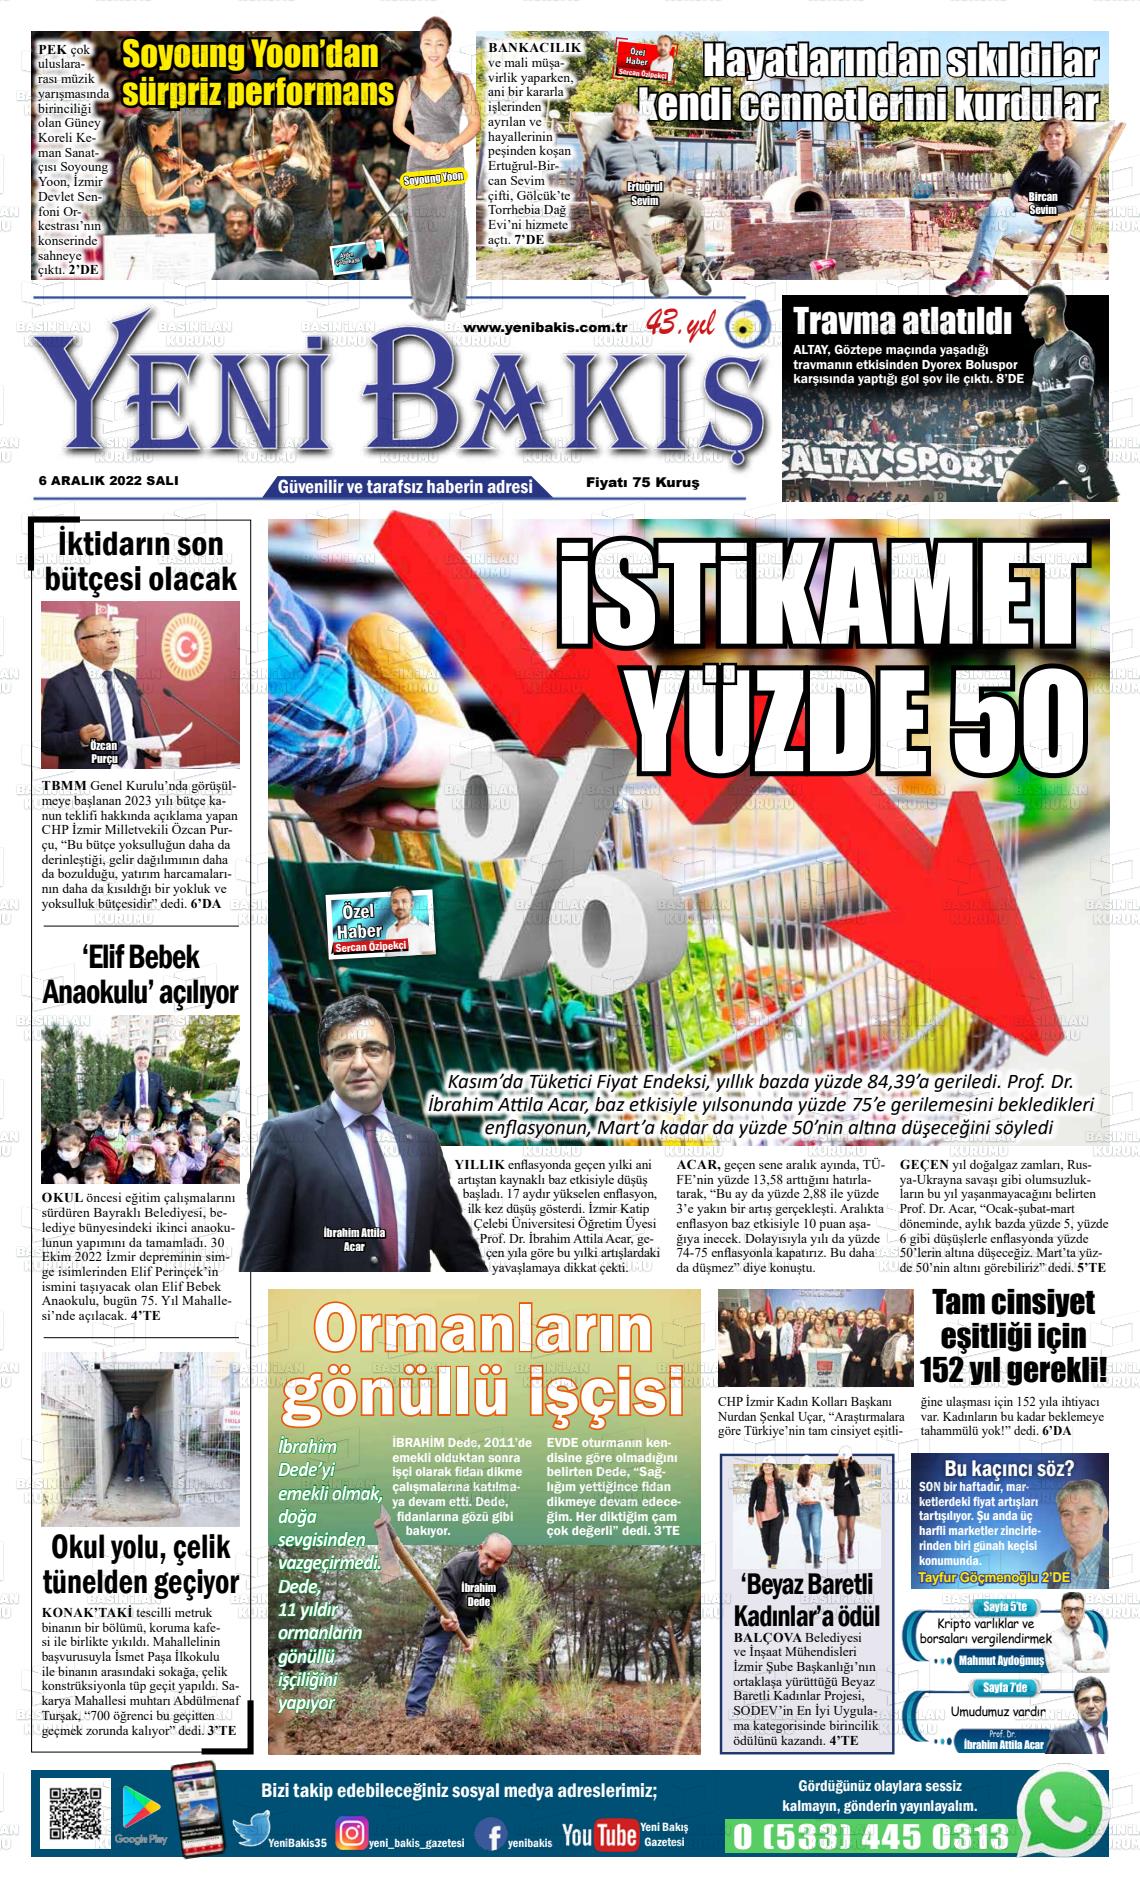 06 Aralık 2022 Yeni Bakış Gazete Manşeti